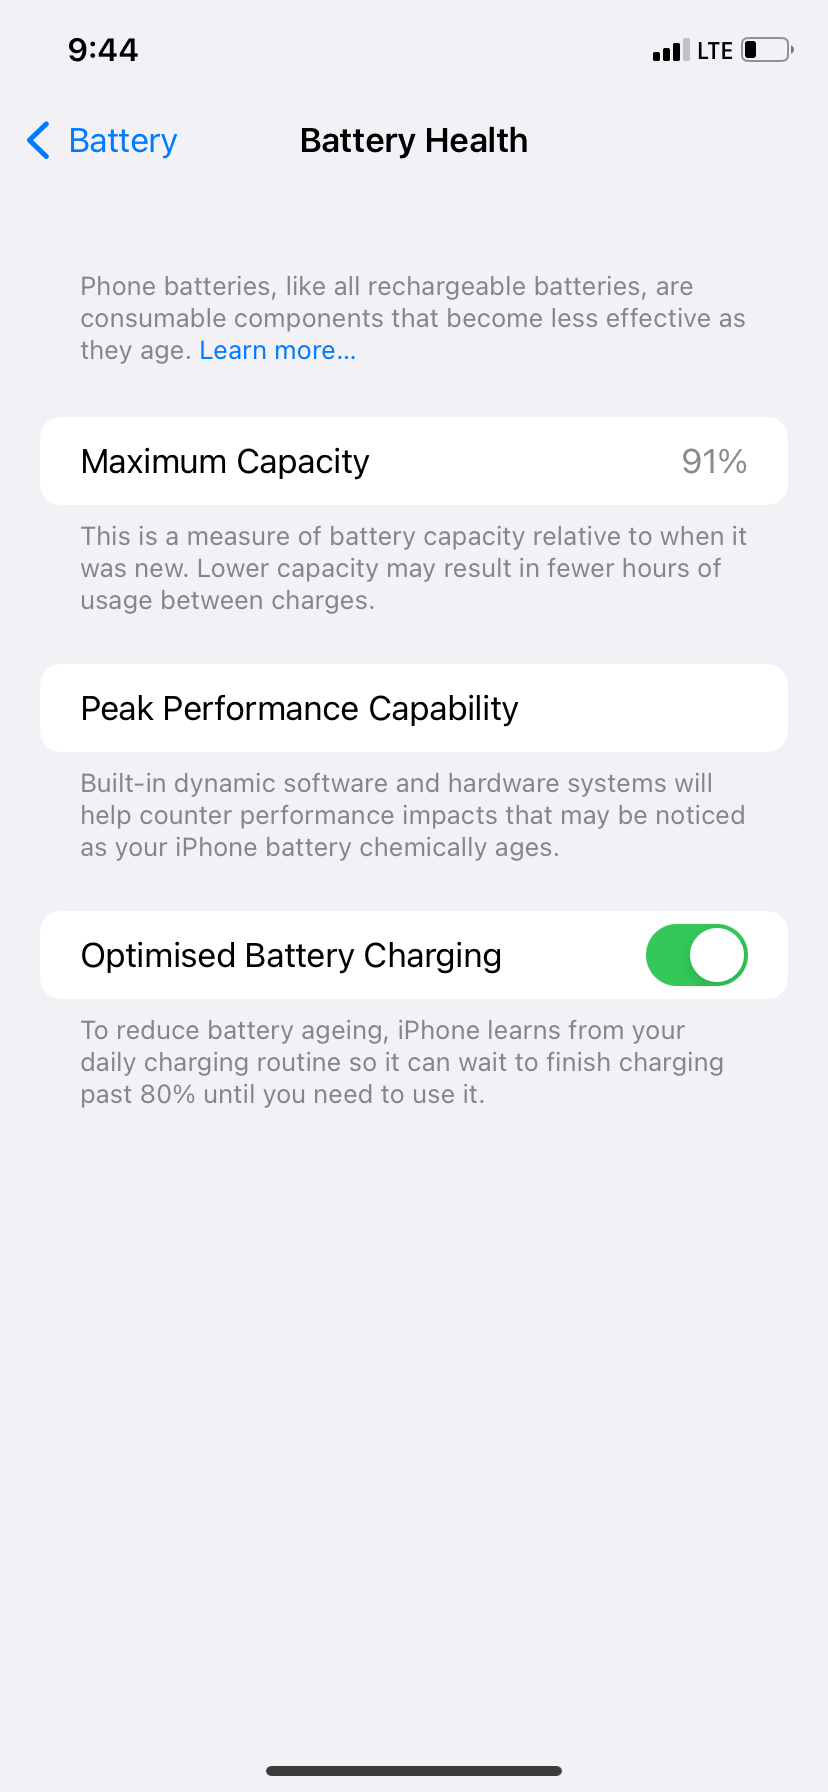 Battery Health Percentage - Maximum Capacity